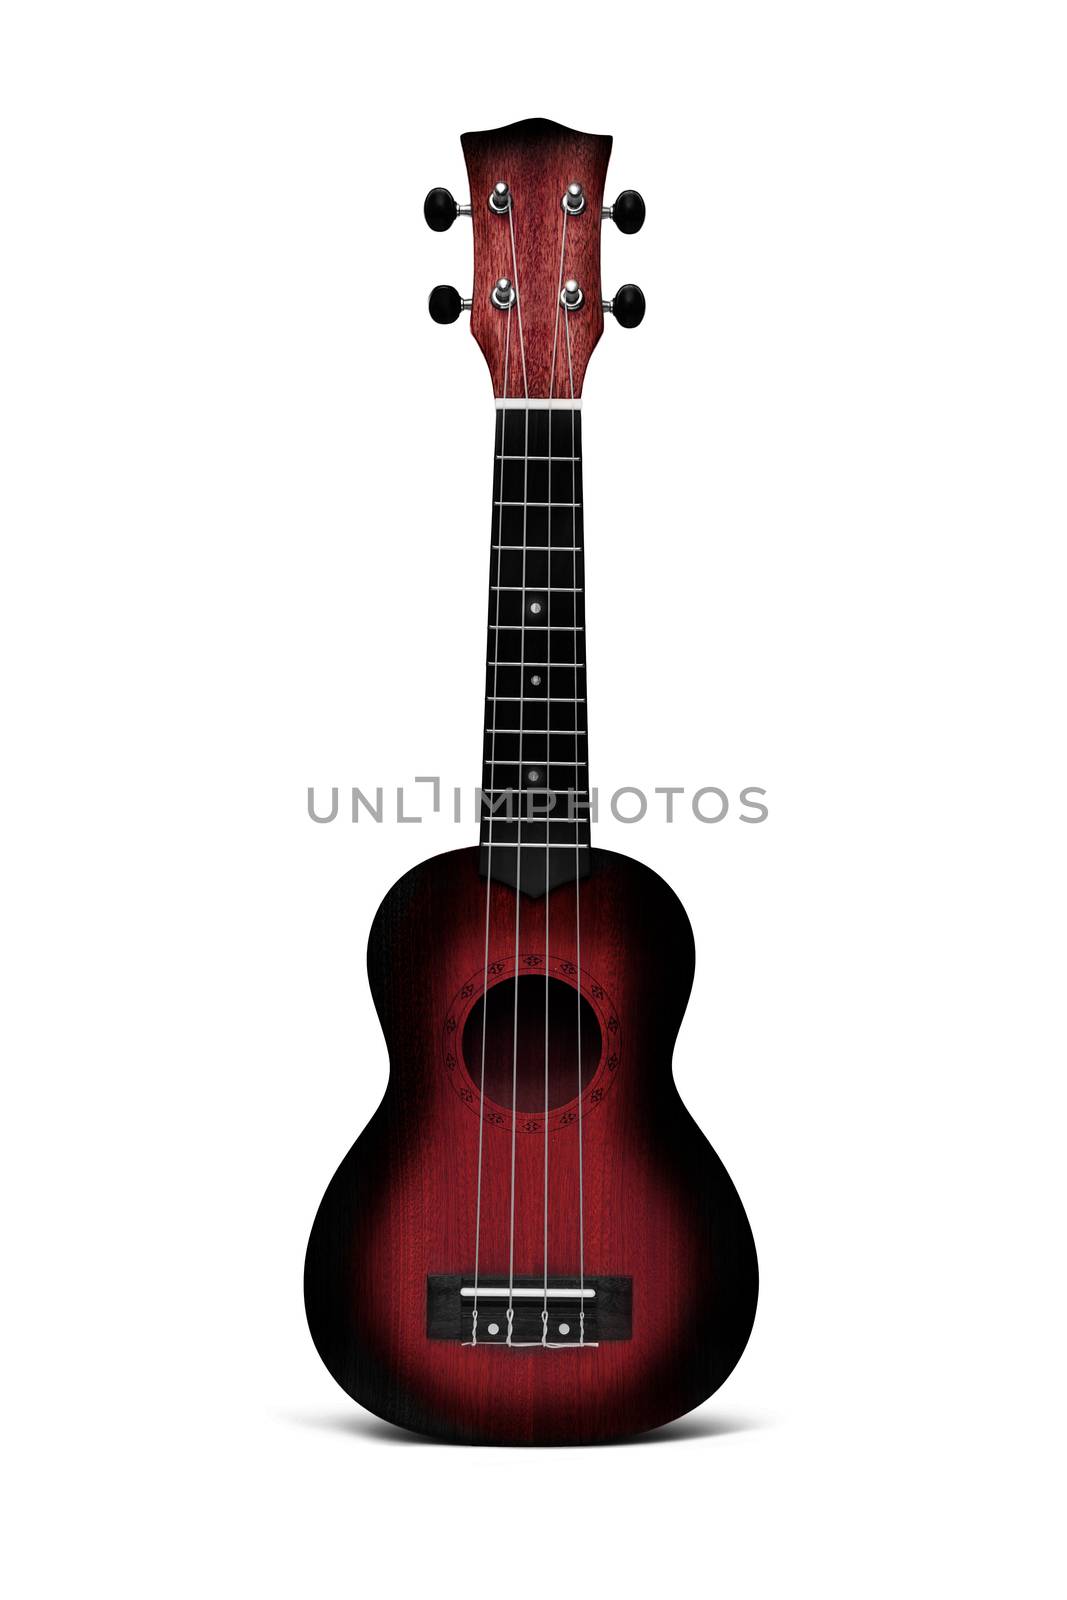 The dark red ukulele guitar isolated on the white background